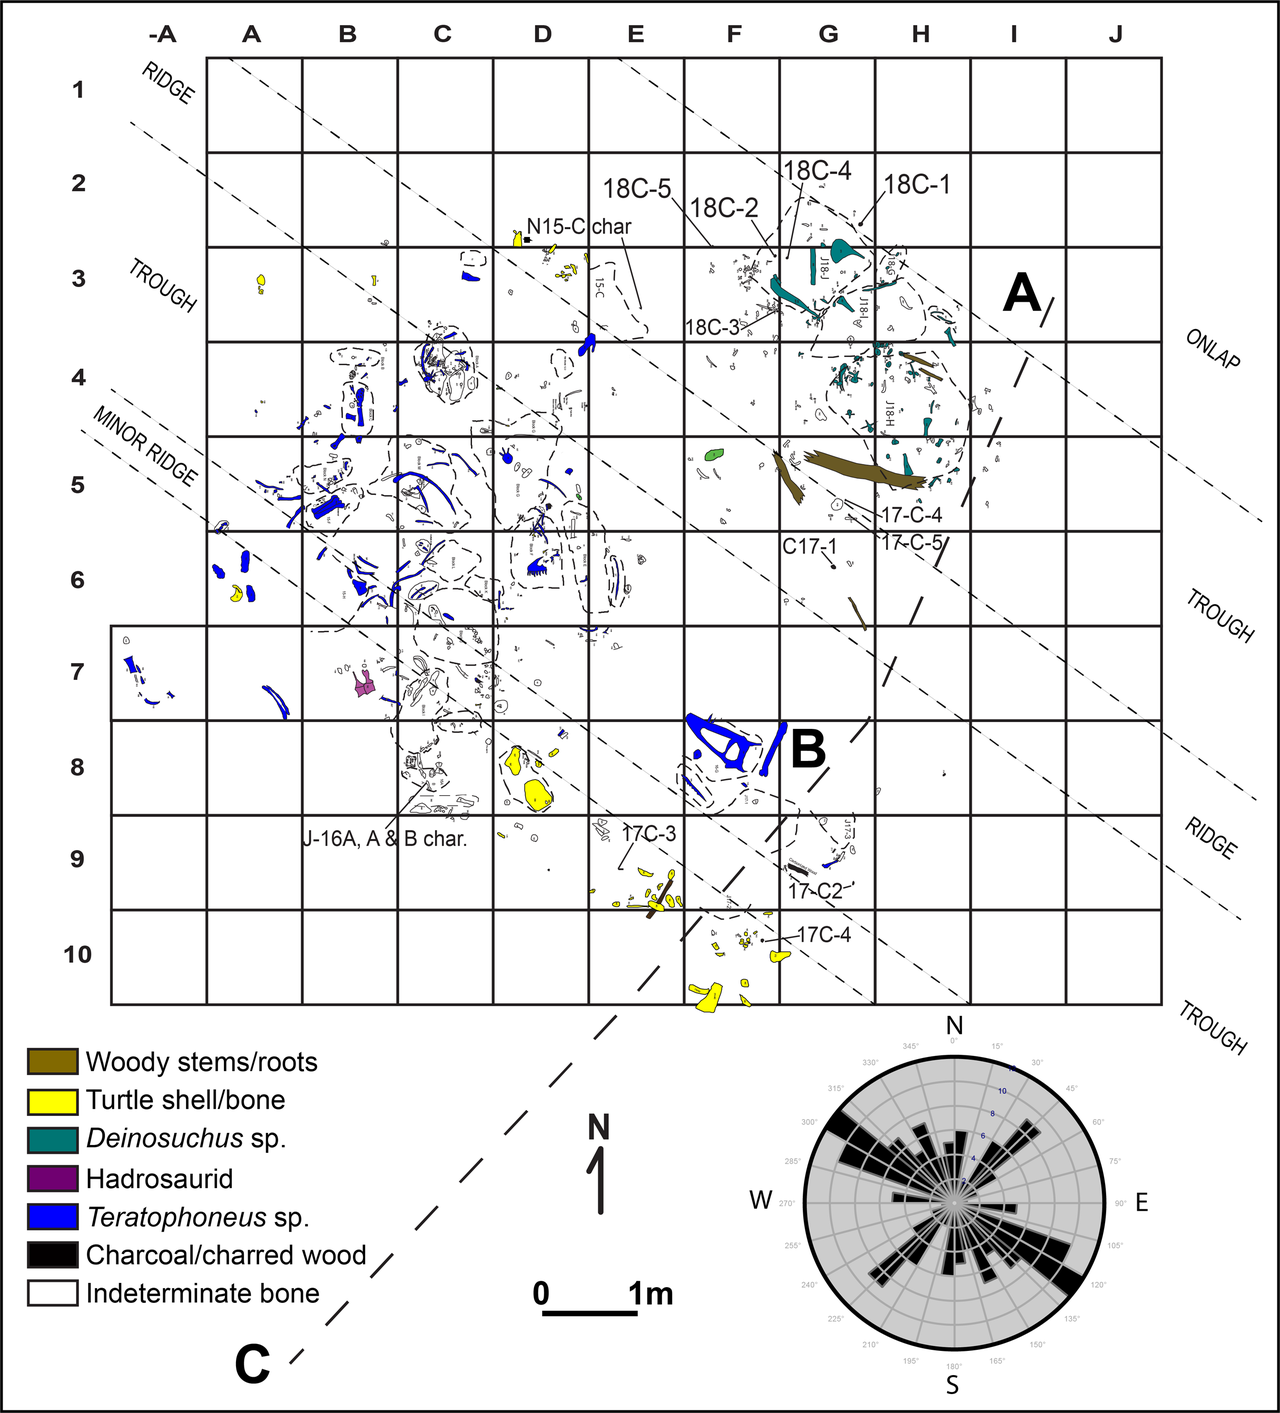 Podrobná mapa lokality se zakreslenými kosterními prvky teratofoneů (modrá barva). Z místa uložení fosilních kostí i dalších zkamenělých objektů je patrné, že pohřbení živočichové zde zahynuli při jakési živelné pohromě, mající nejspíš podobu mohutný